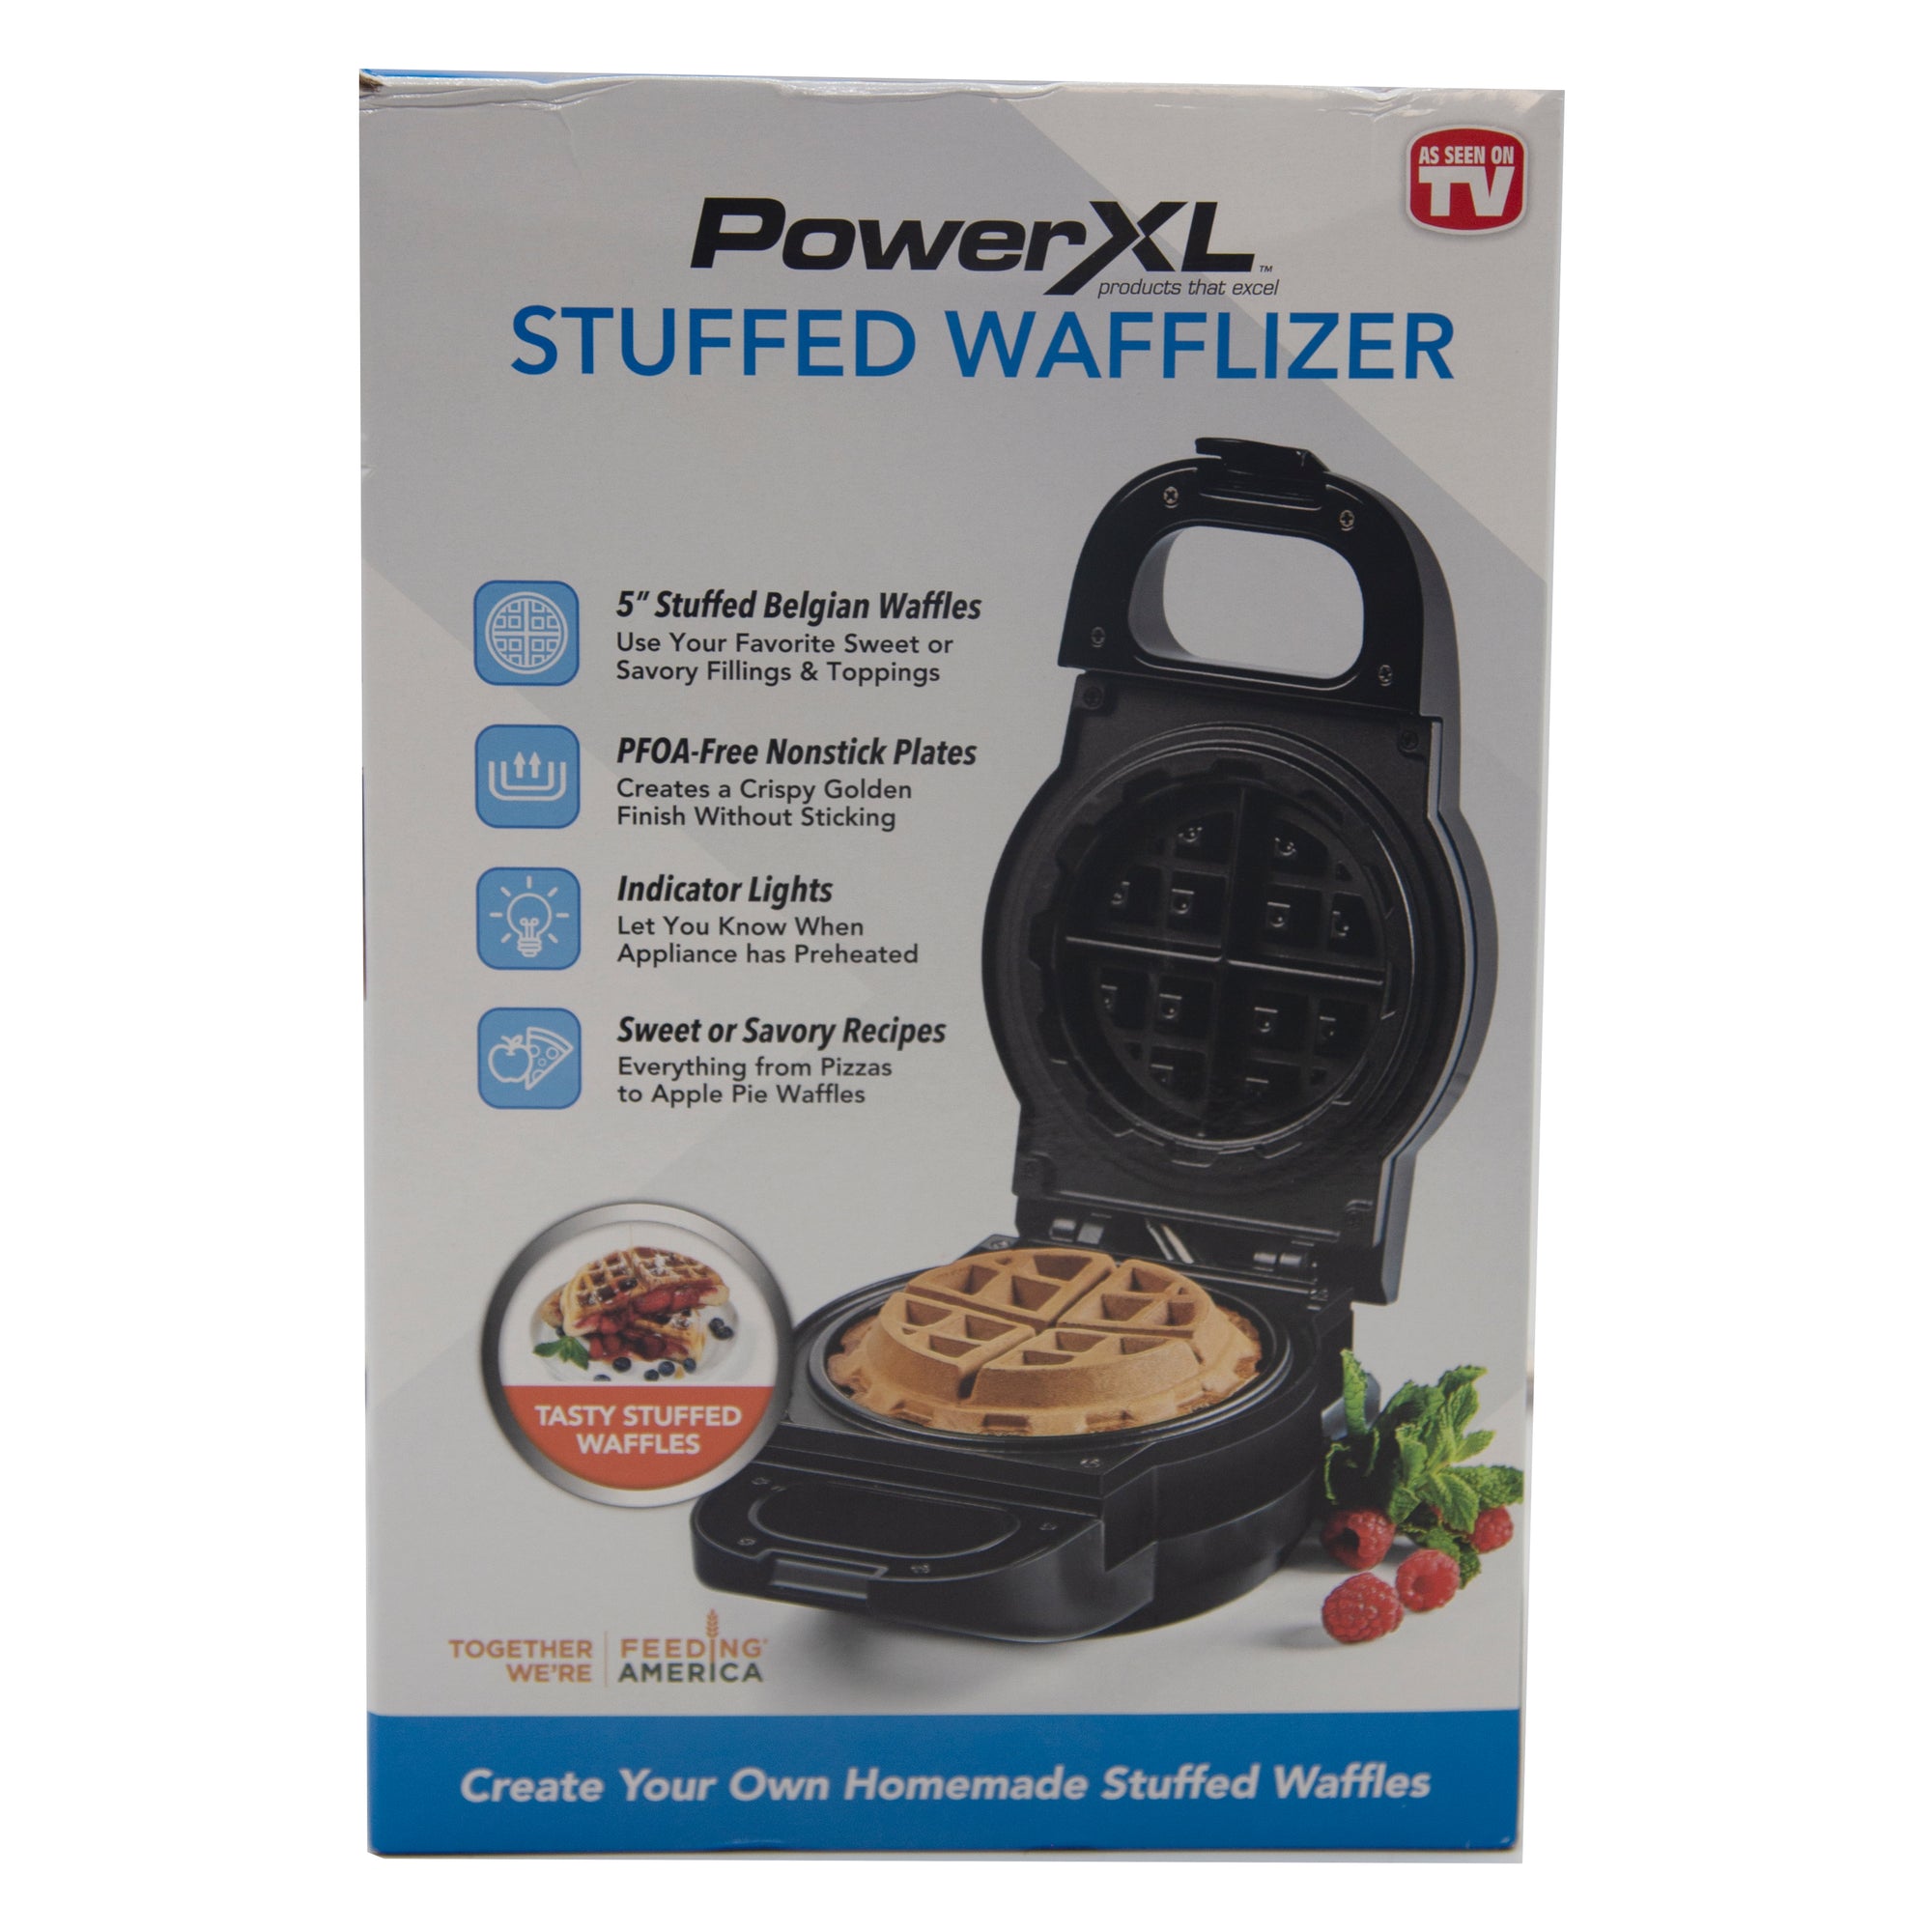 Power XL Wafflizer Stuffed Waffle Maker and Belgian Waffle Iron